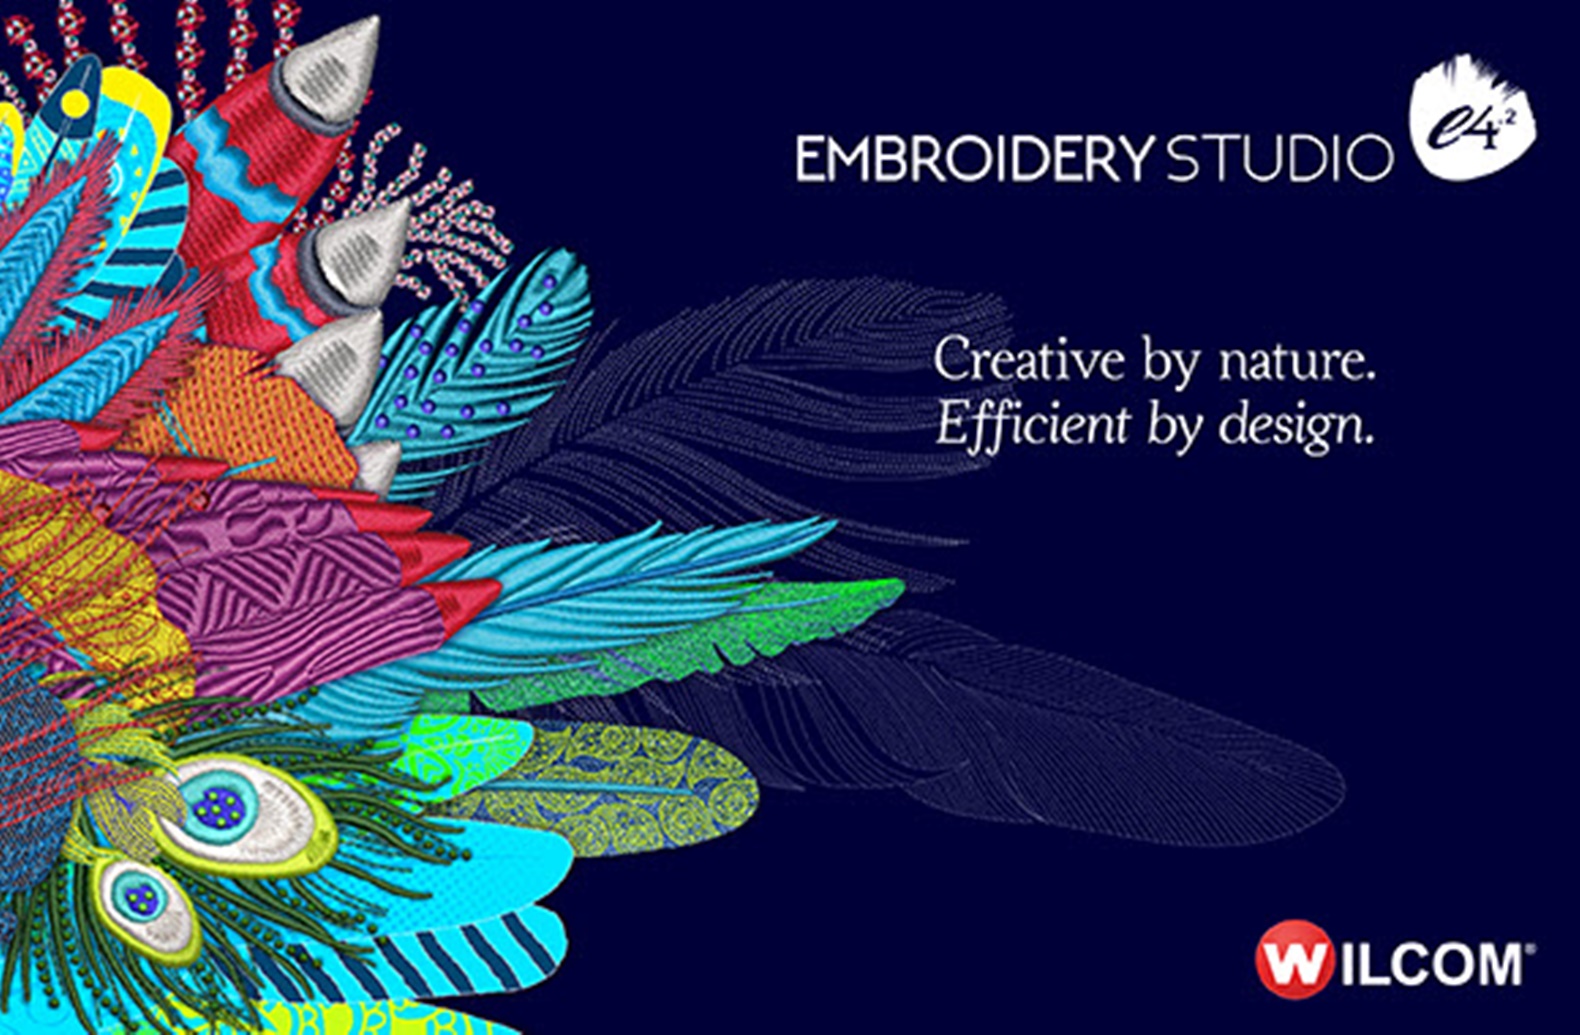 Wilcom Embroidery Studio e4.2H + CorelDRAW 2017 (x64) โปรแกรมจักรปัก พร้อมวิดีโอแนะนำการติดตั้งจ้า